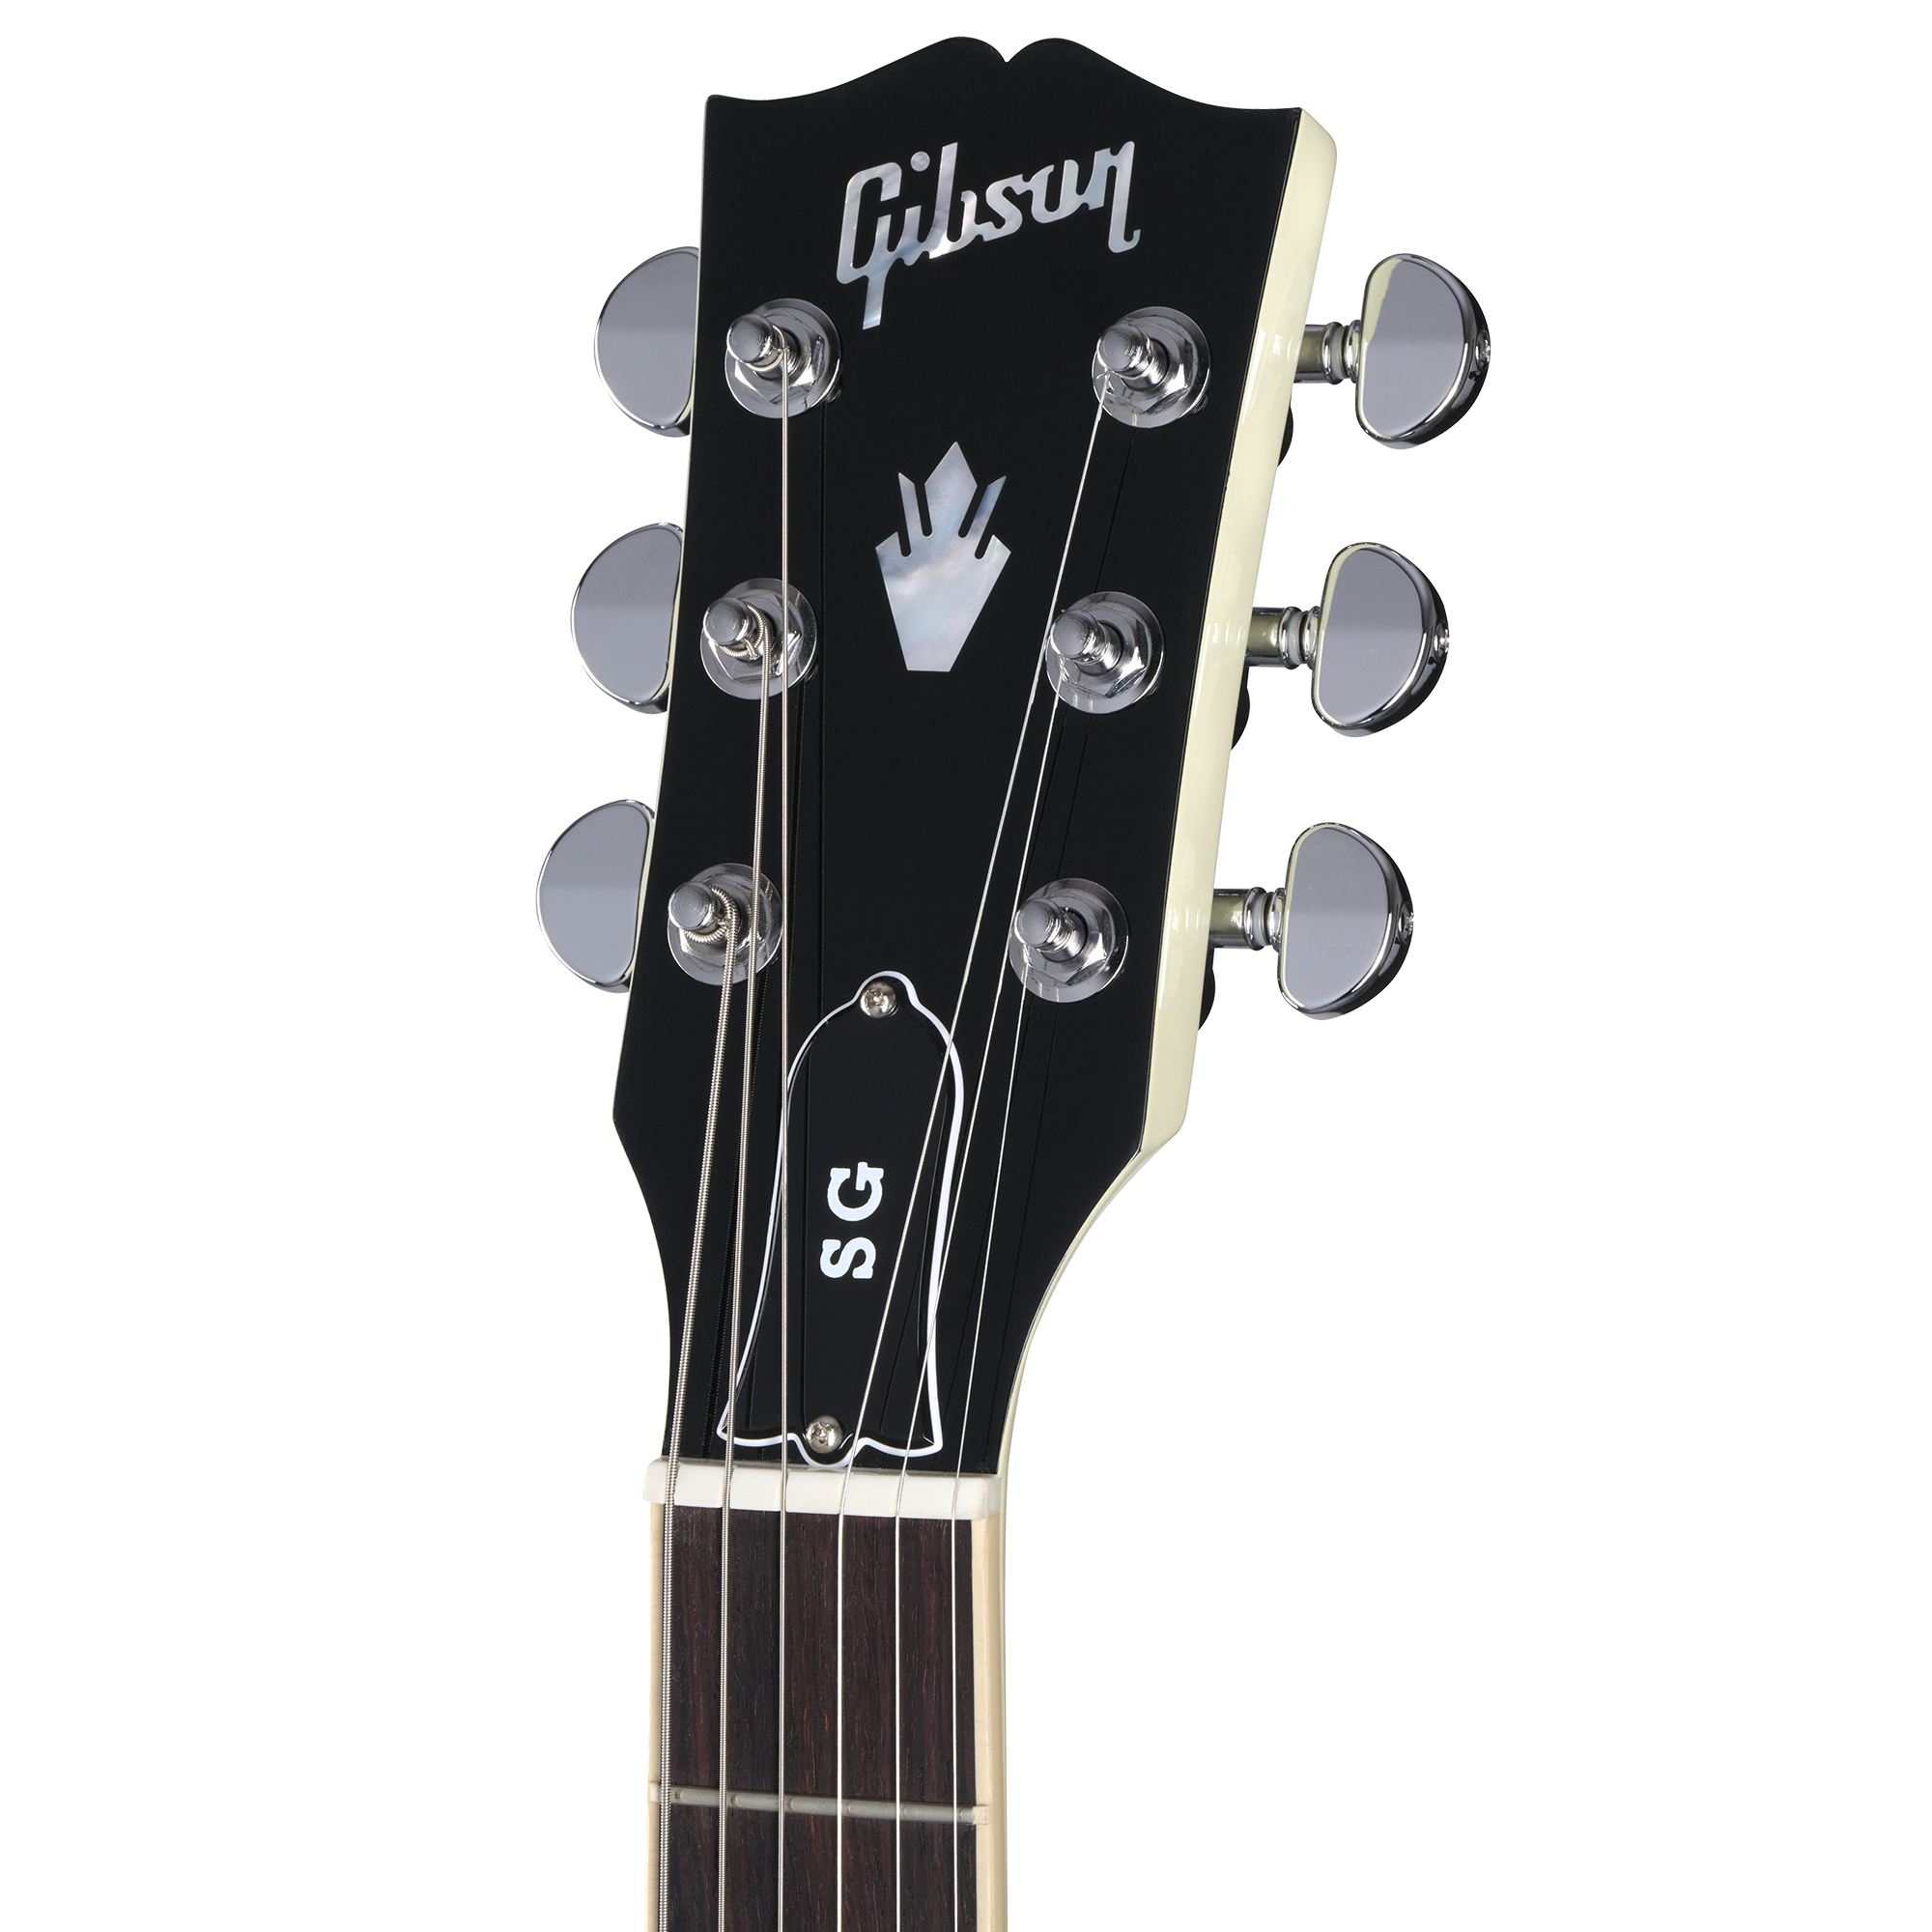 SG Standard | Gibson